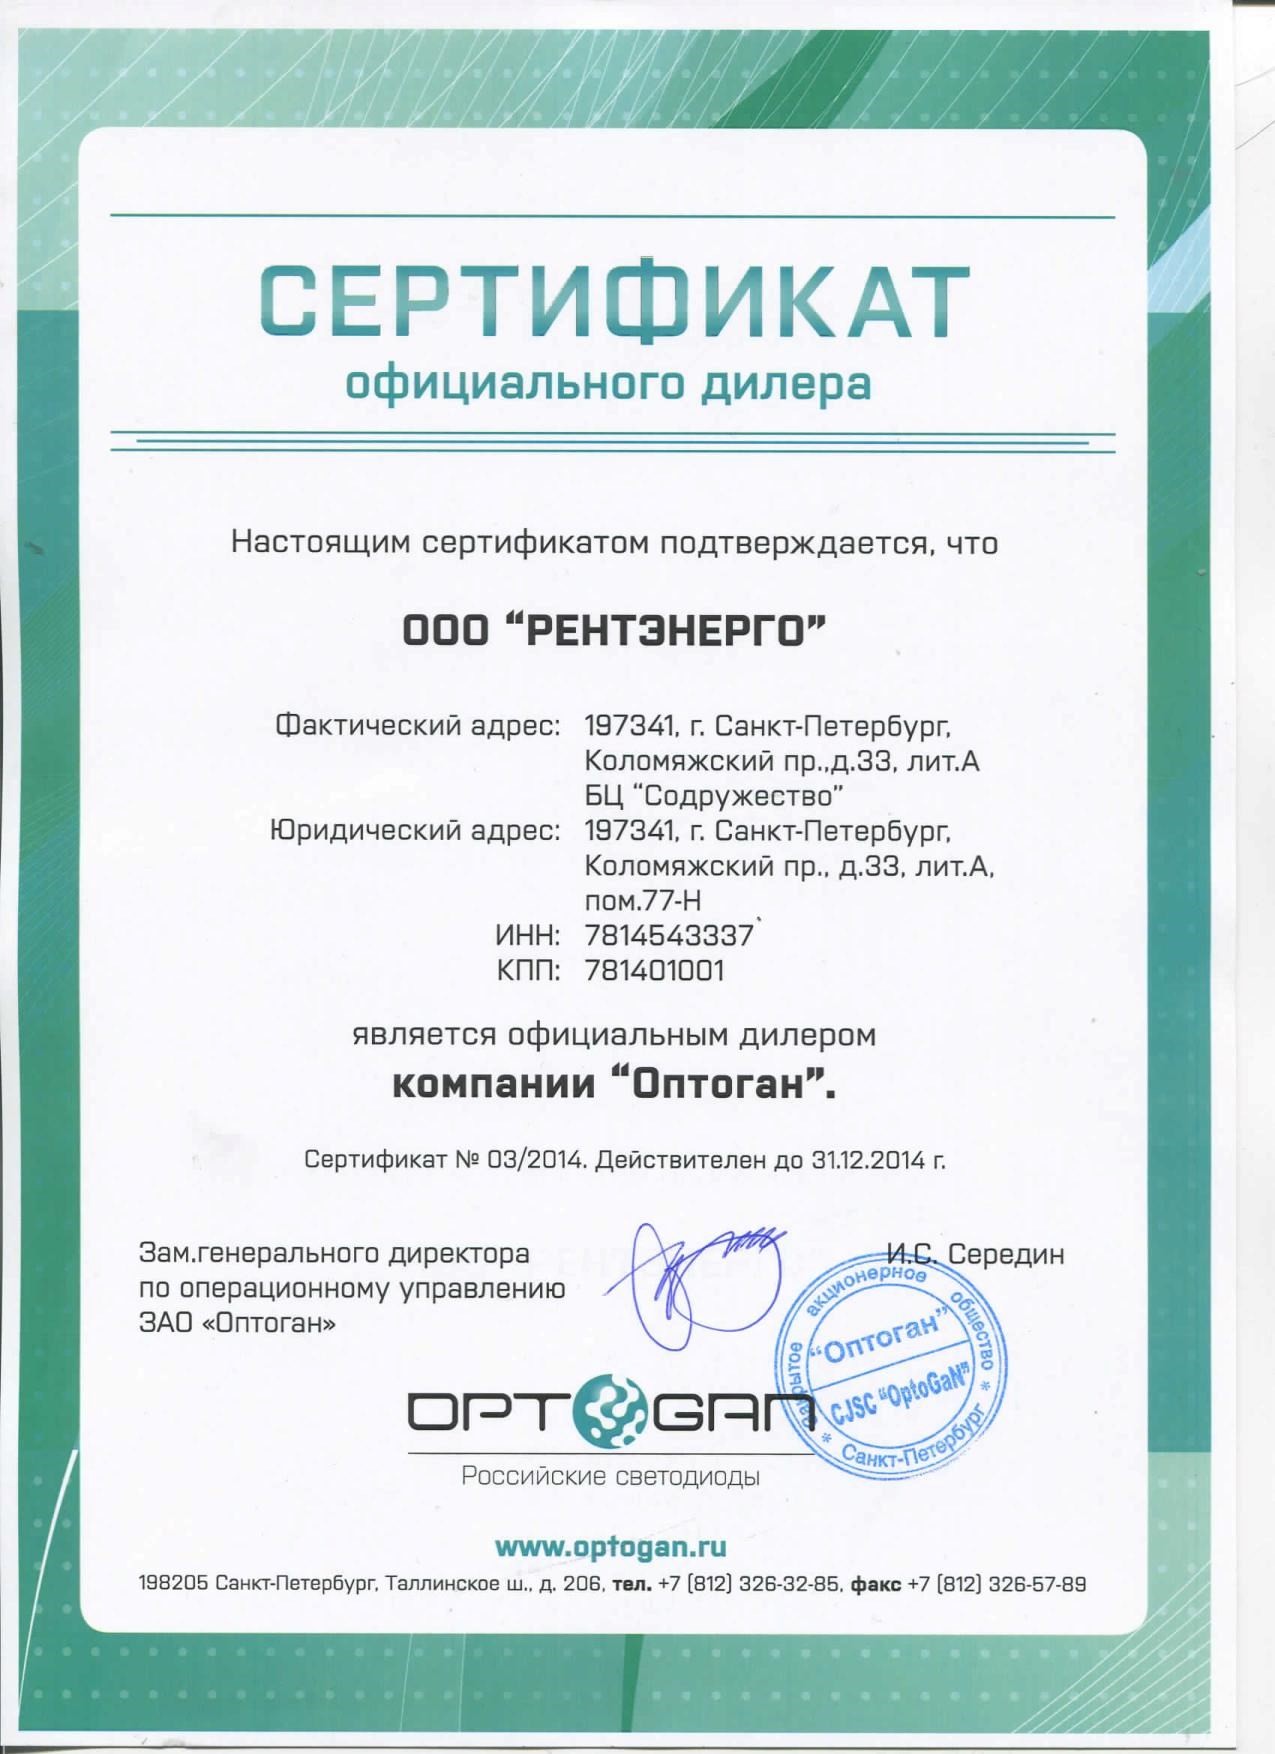 Сертификат официального дилера Оптоган